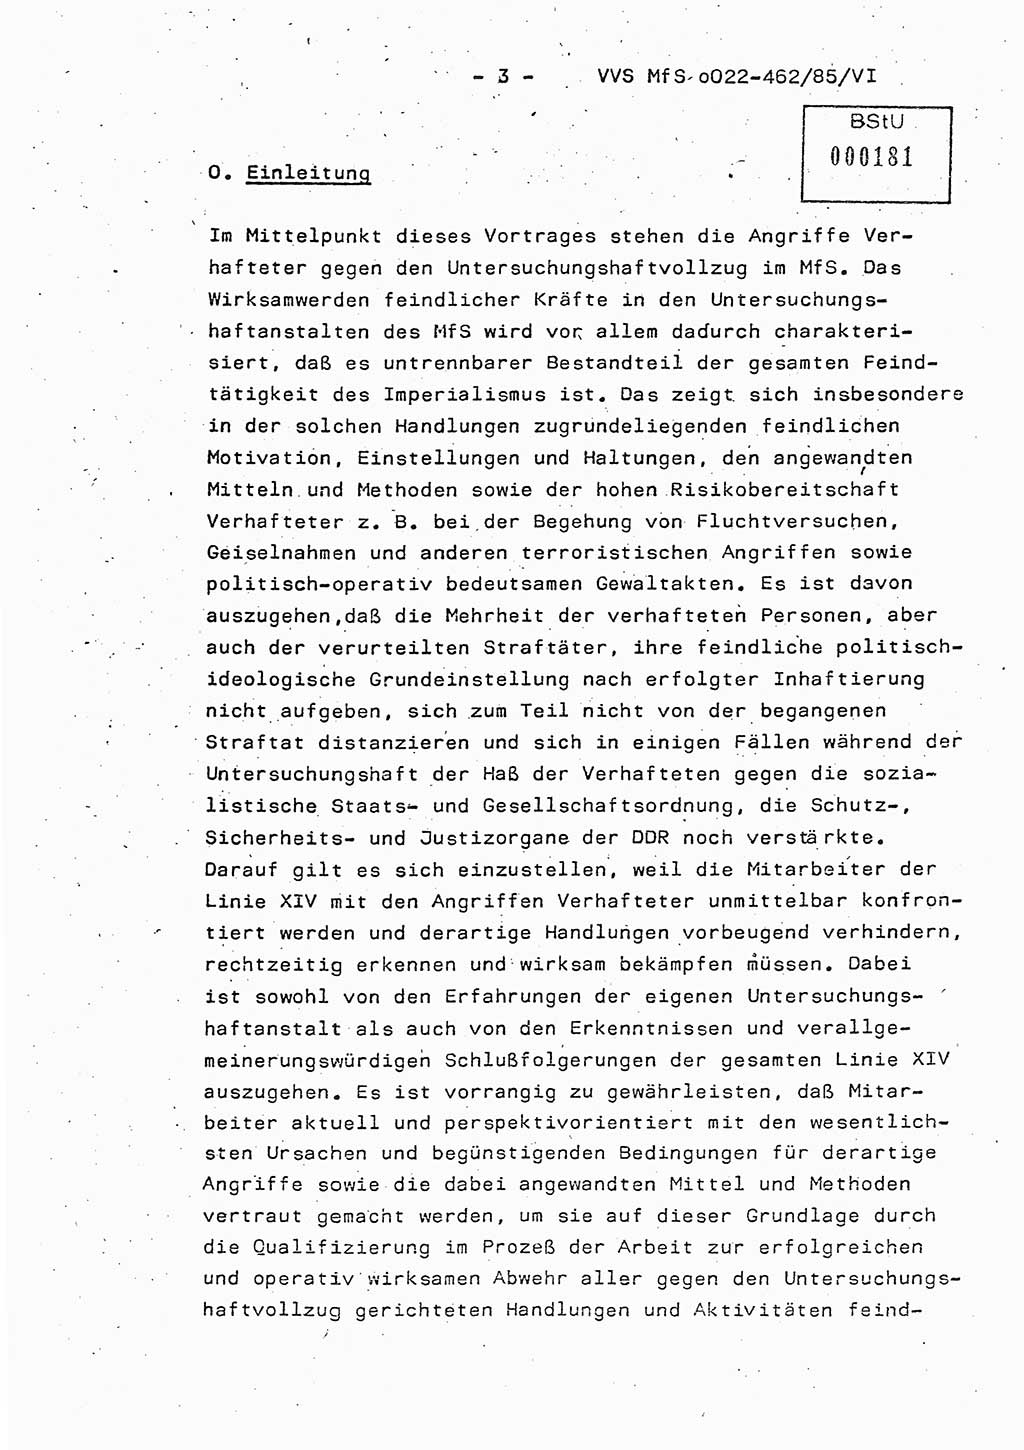 Der Untersuchungshaftvollzug im MfS, Schulungsmaterial Teil Ⅵ, Ministerium für Staatssicherheit [Deutsche Demokratische Republik (DDR)], Abteilung (Abt.) ⅩⅣ, Vertrauliche Verschlußsache (VVS) o022-462/85/Ⅵ, Berlin 1985, Seite 3 (Sch.-Mat. Ⅵ MfS DDR Abt. ⅩⅣ VVS o022-462/85/Ⅵ 1985, S. 3)